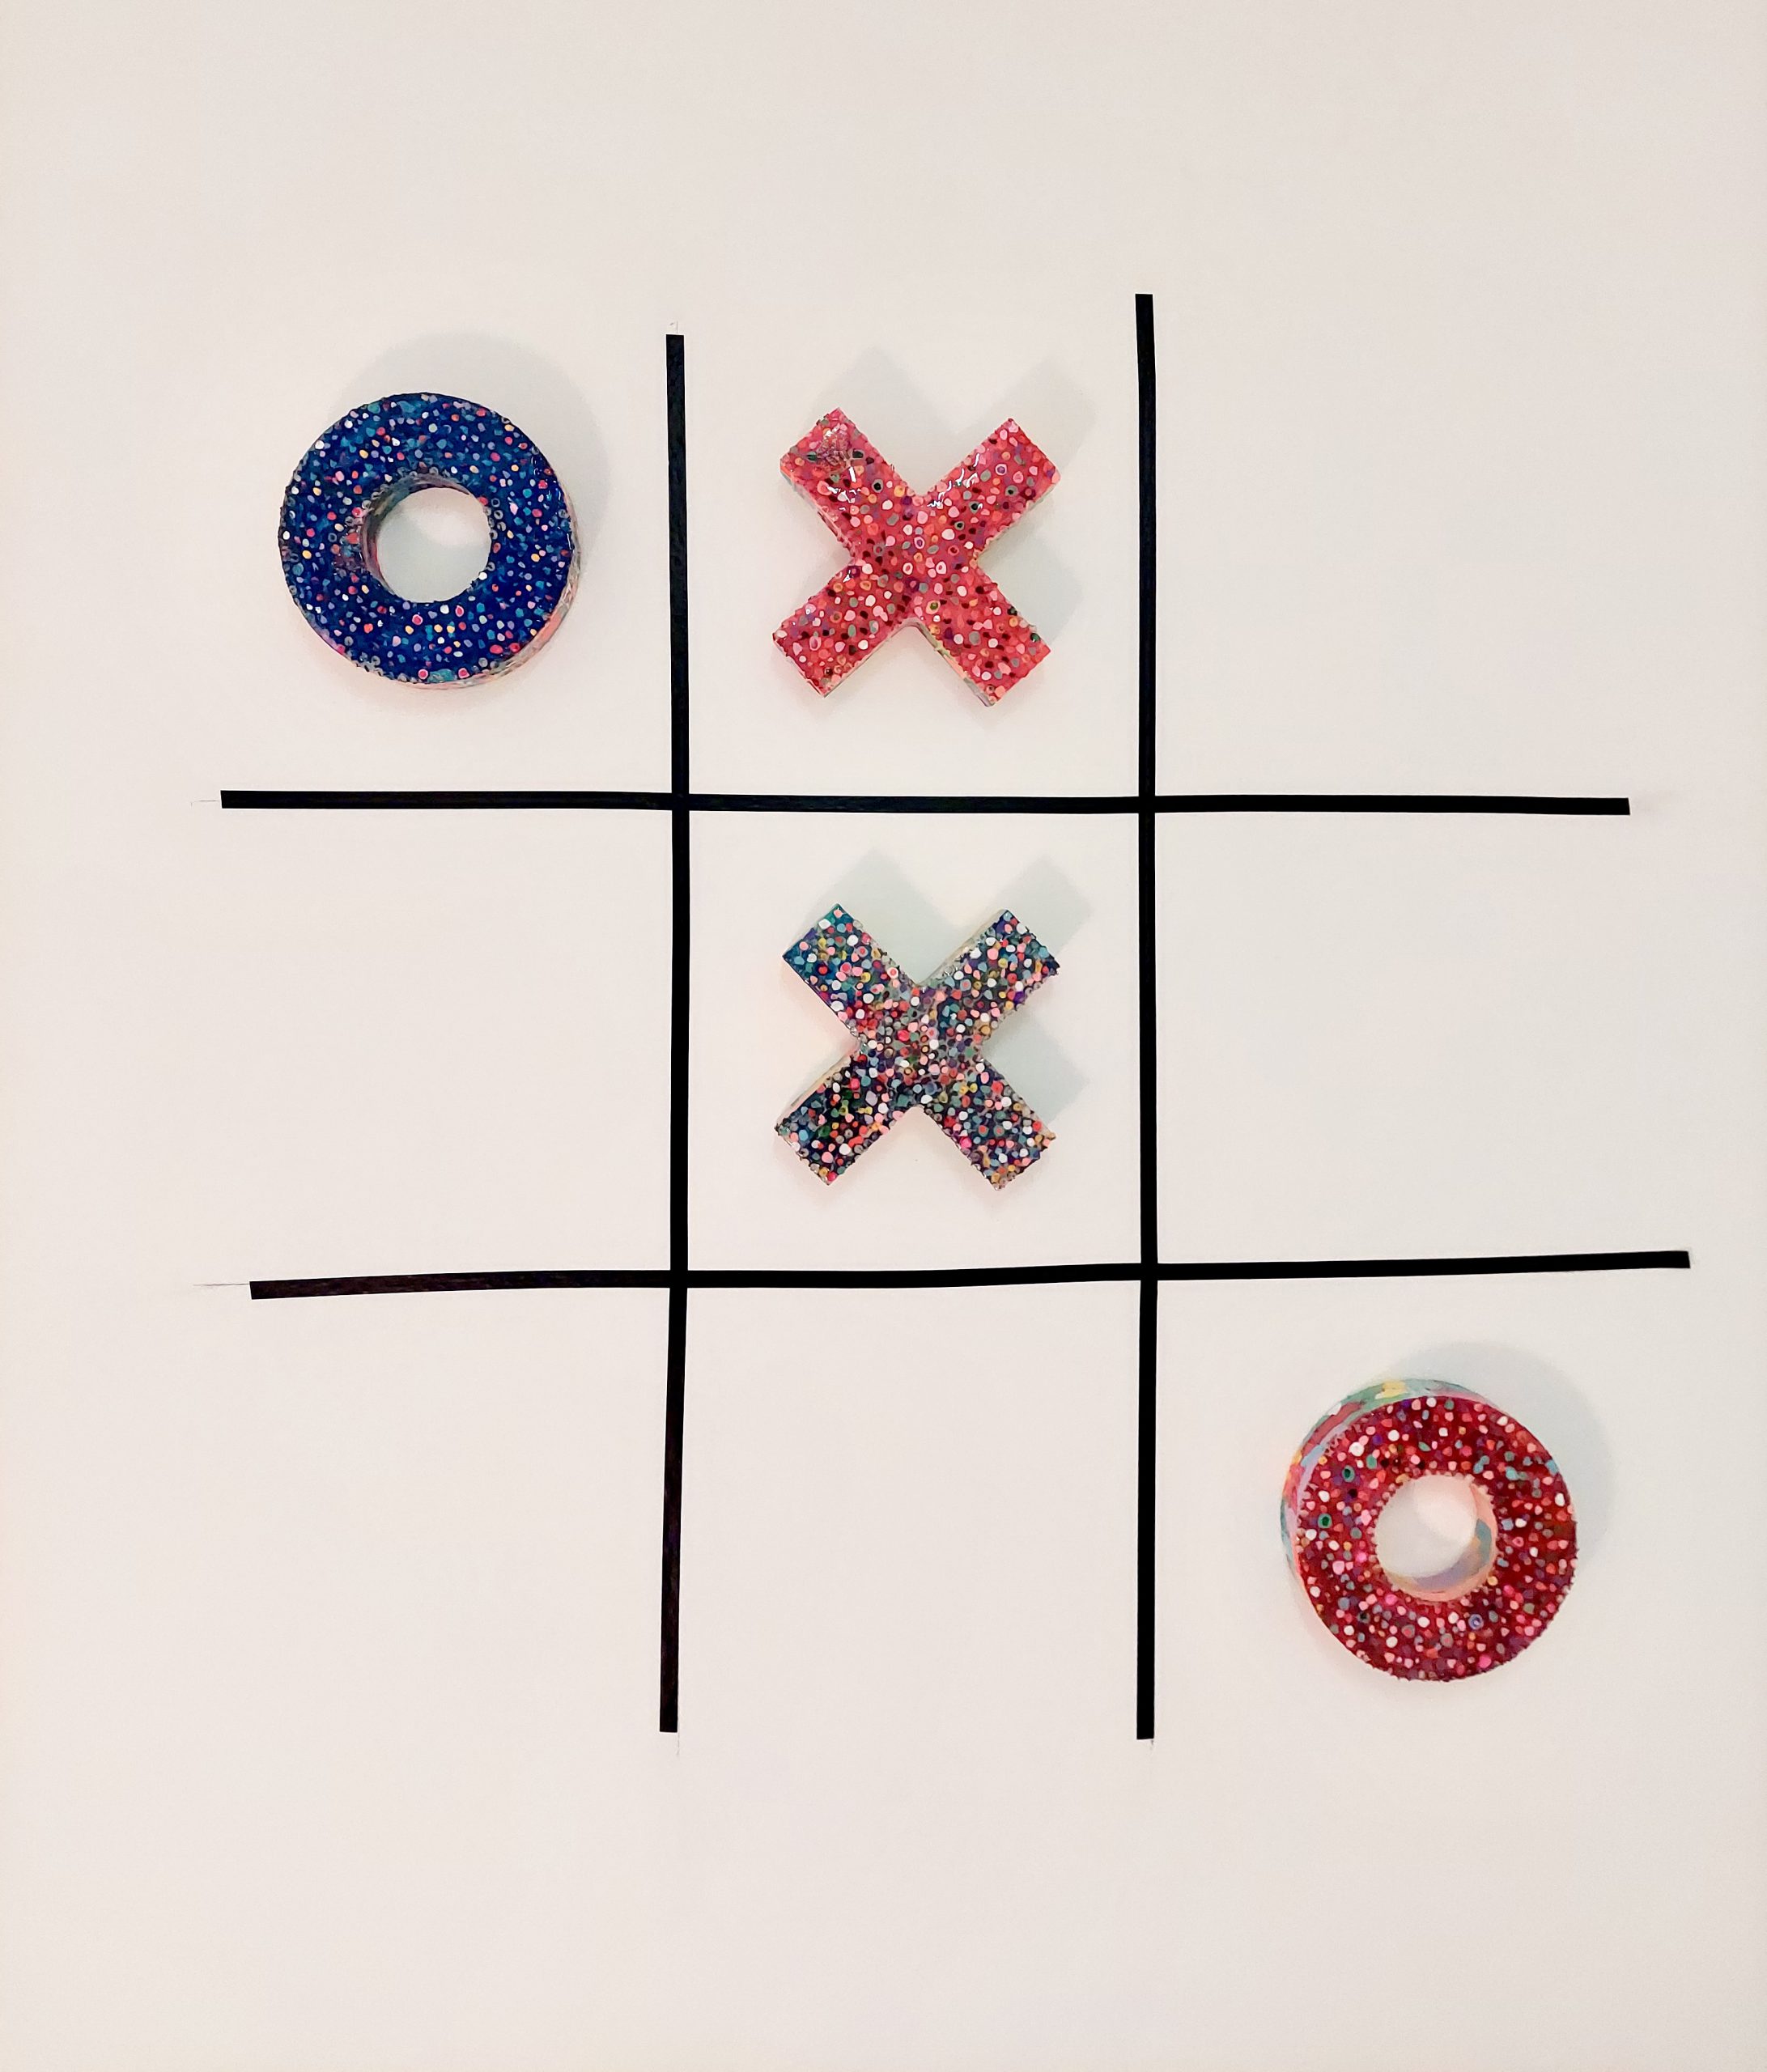 Gianluca Patti, The Game, 2022, installazione di 4 pezzi in resina e acrilico su legno, 150x150 cm